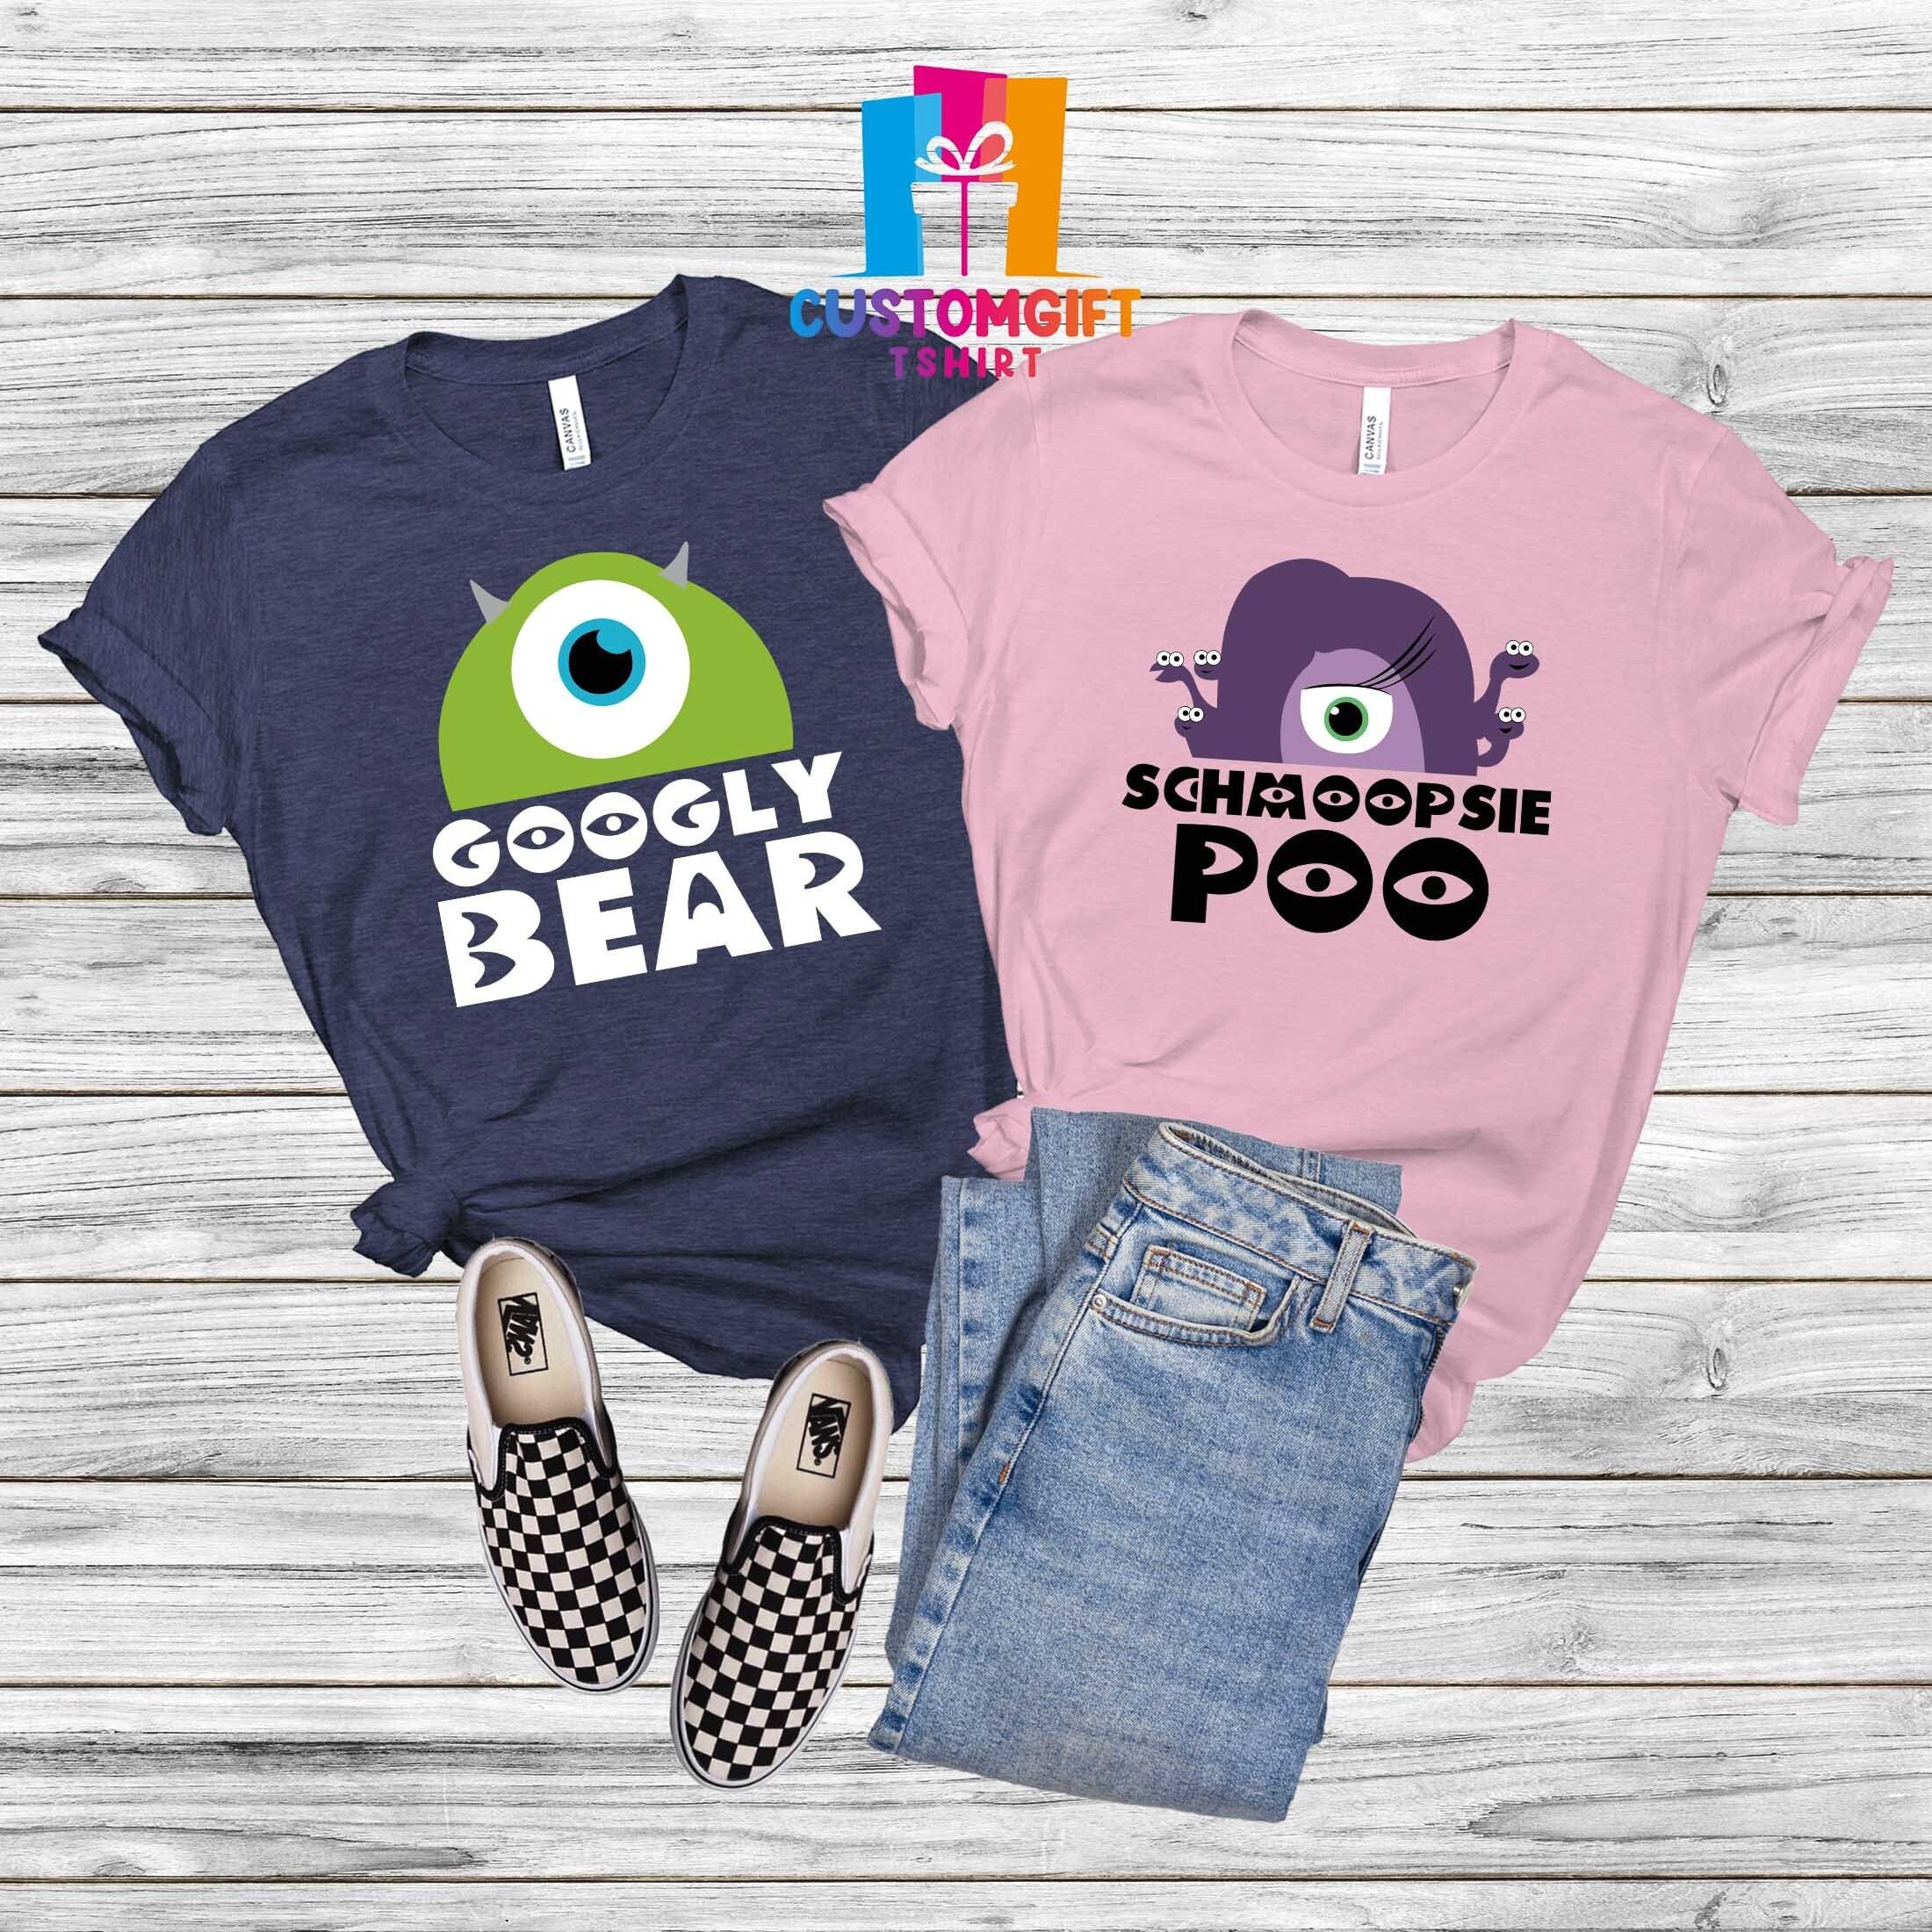 Googly Bear Shirt, Schmoopsie Poo Shirt, Monster Shirt, Funny Shirt, Couple Shirt